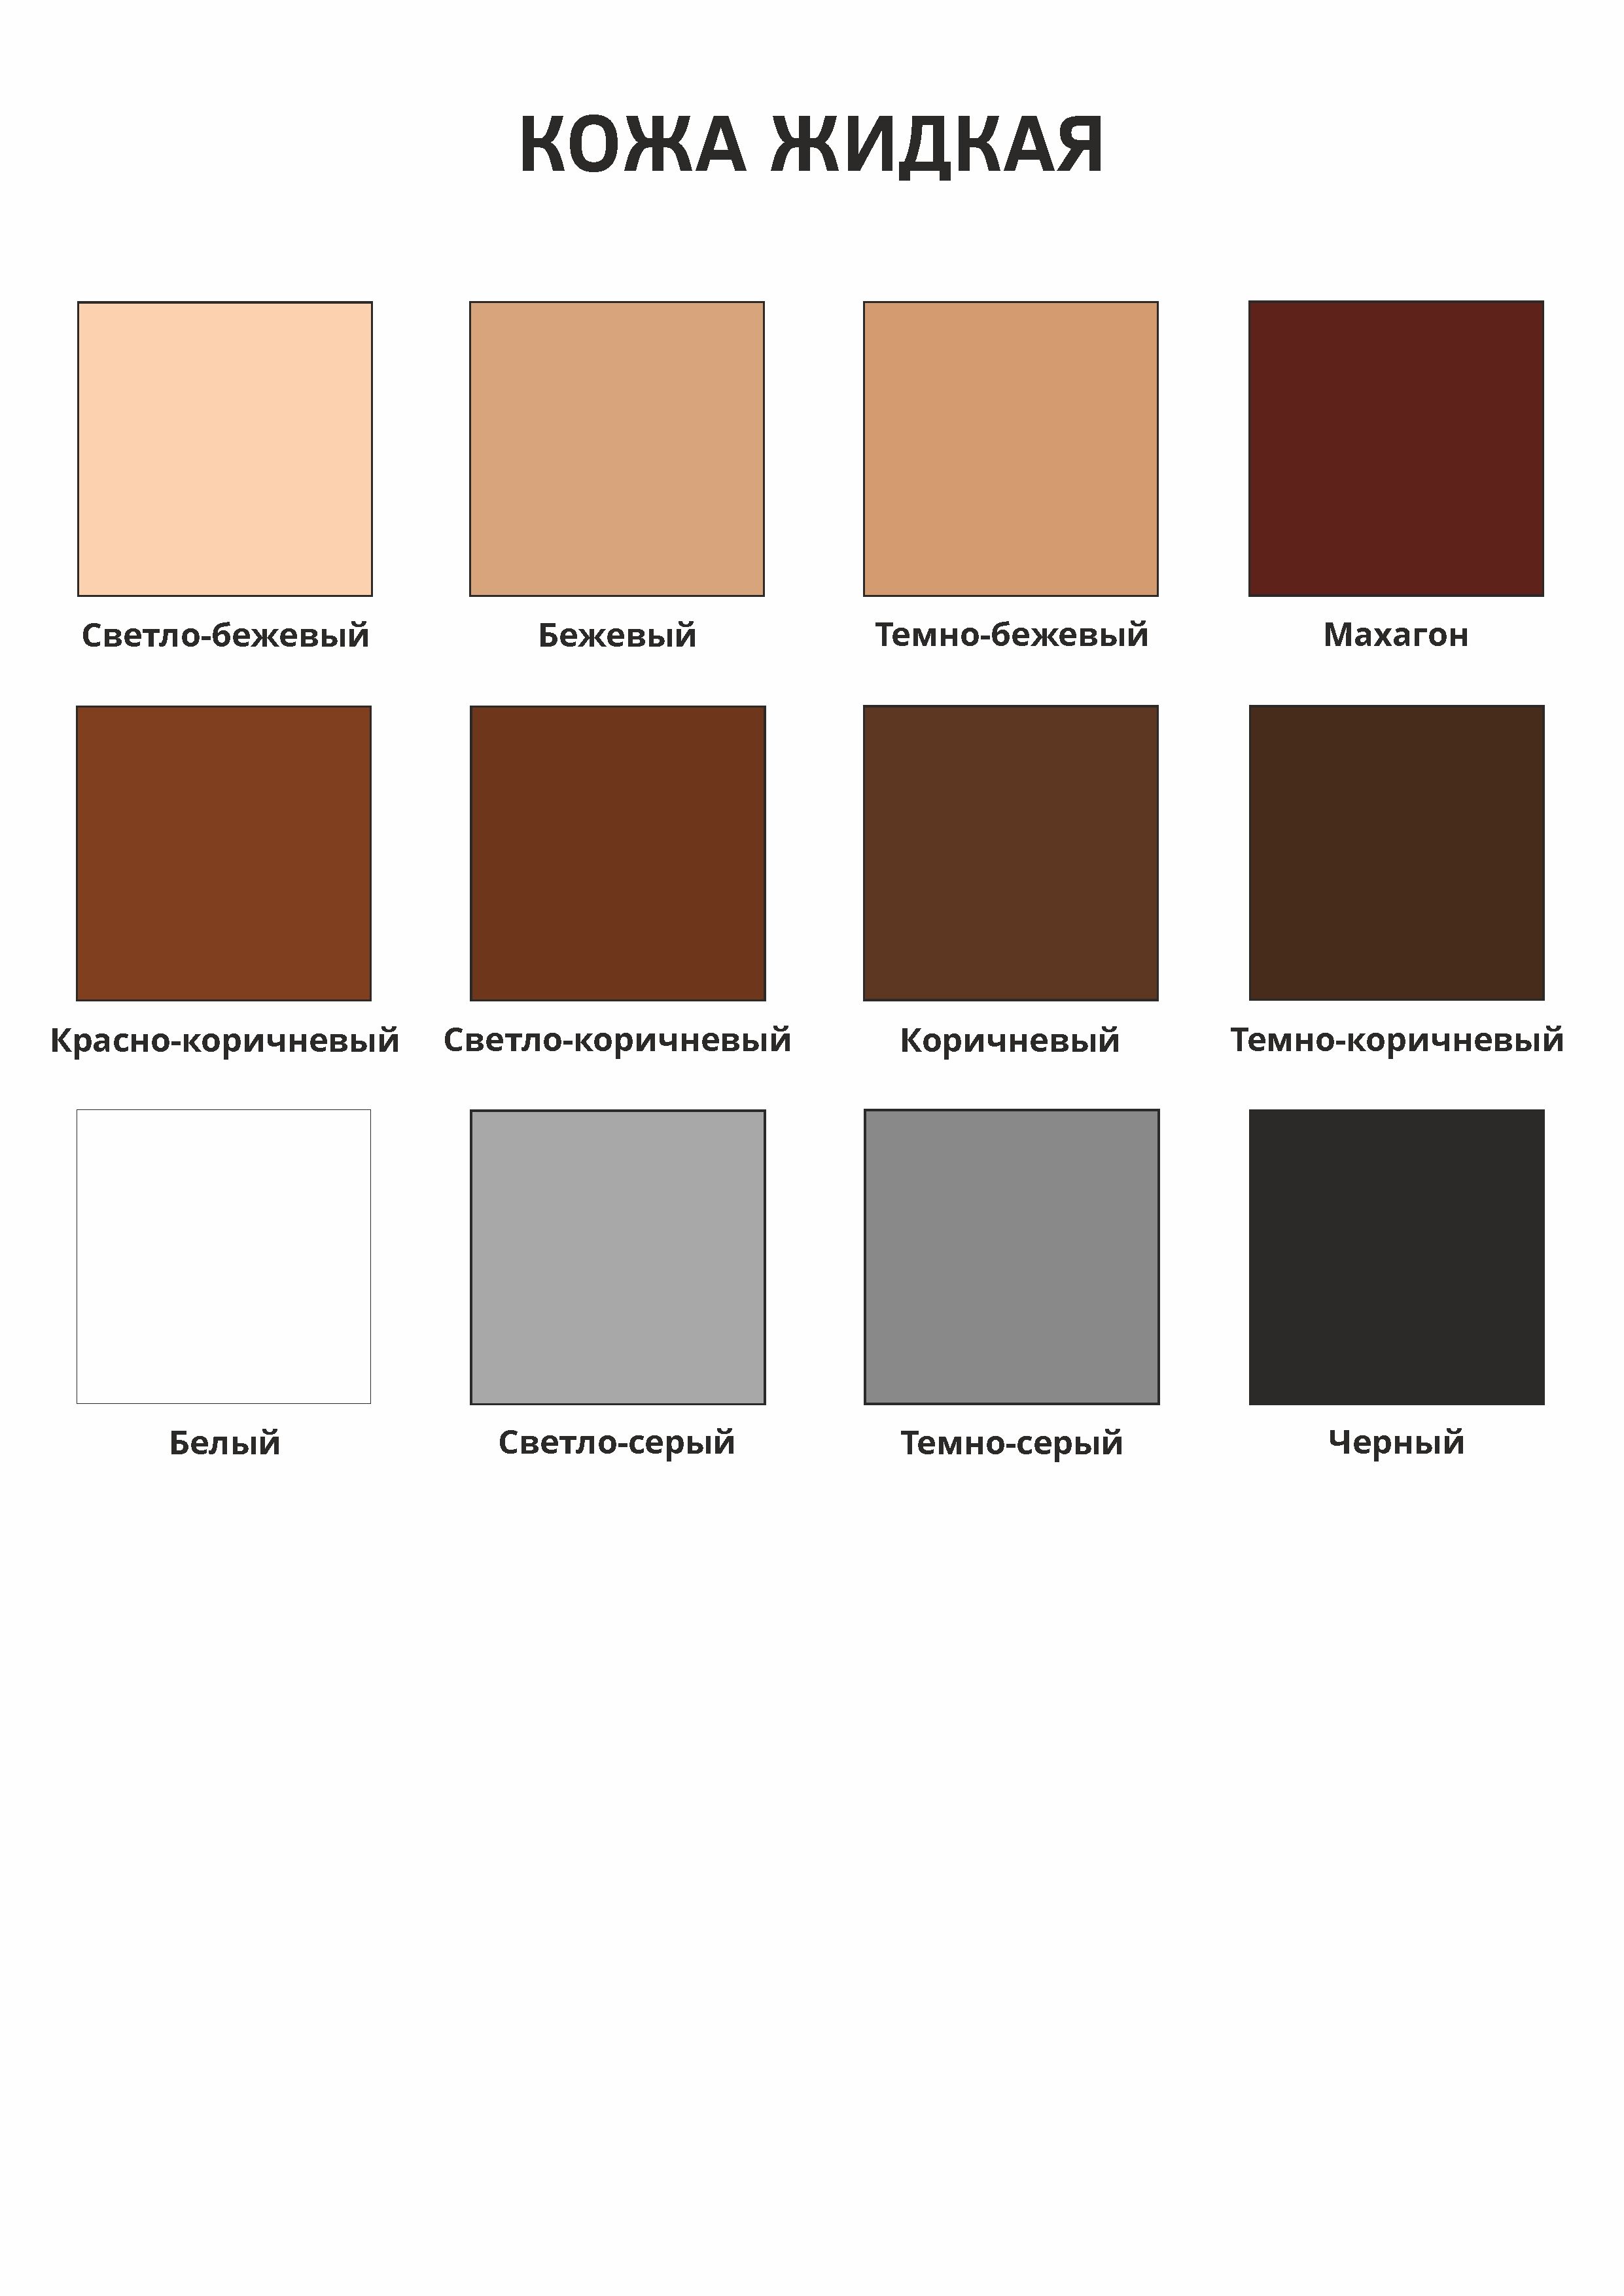 Жидкая кожа - темно-коричневый (Н) Новатор 12733 Жидкая кожа - темно-коричневый (Н) - фото 3